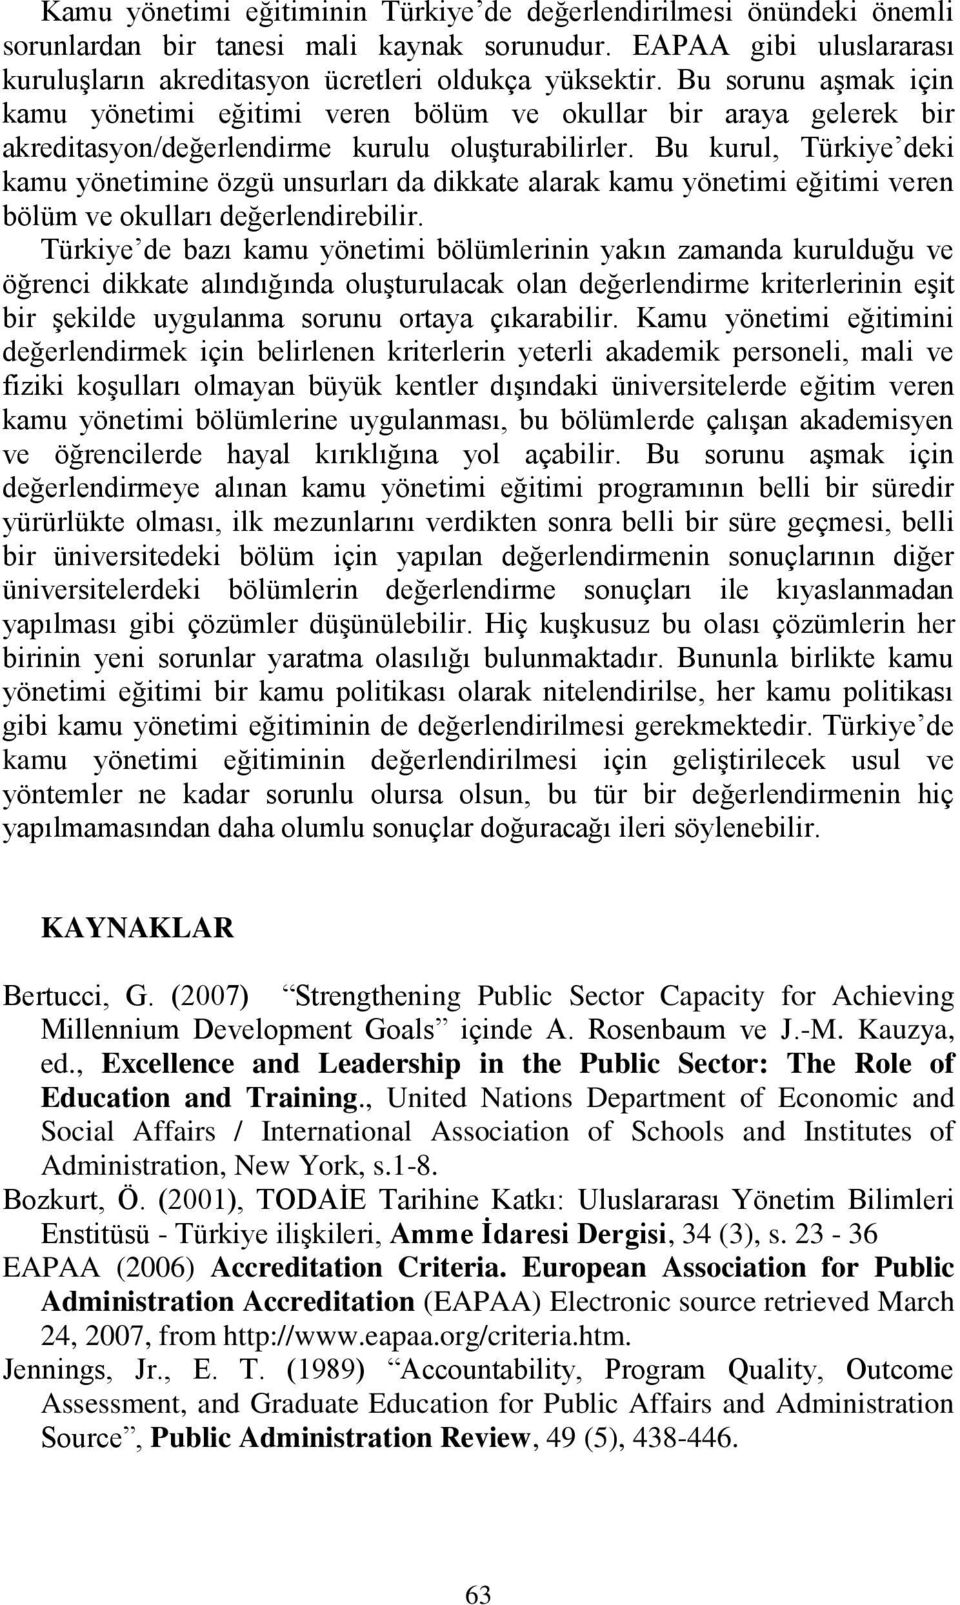 Bu kurul, Türkiye deki kamu yönetimine özgü unsurları da dikkate alarak kamu yönetimi eğitimi veren bölüm ve okulları değerlendirebilir.